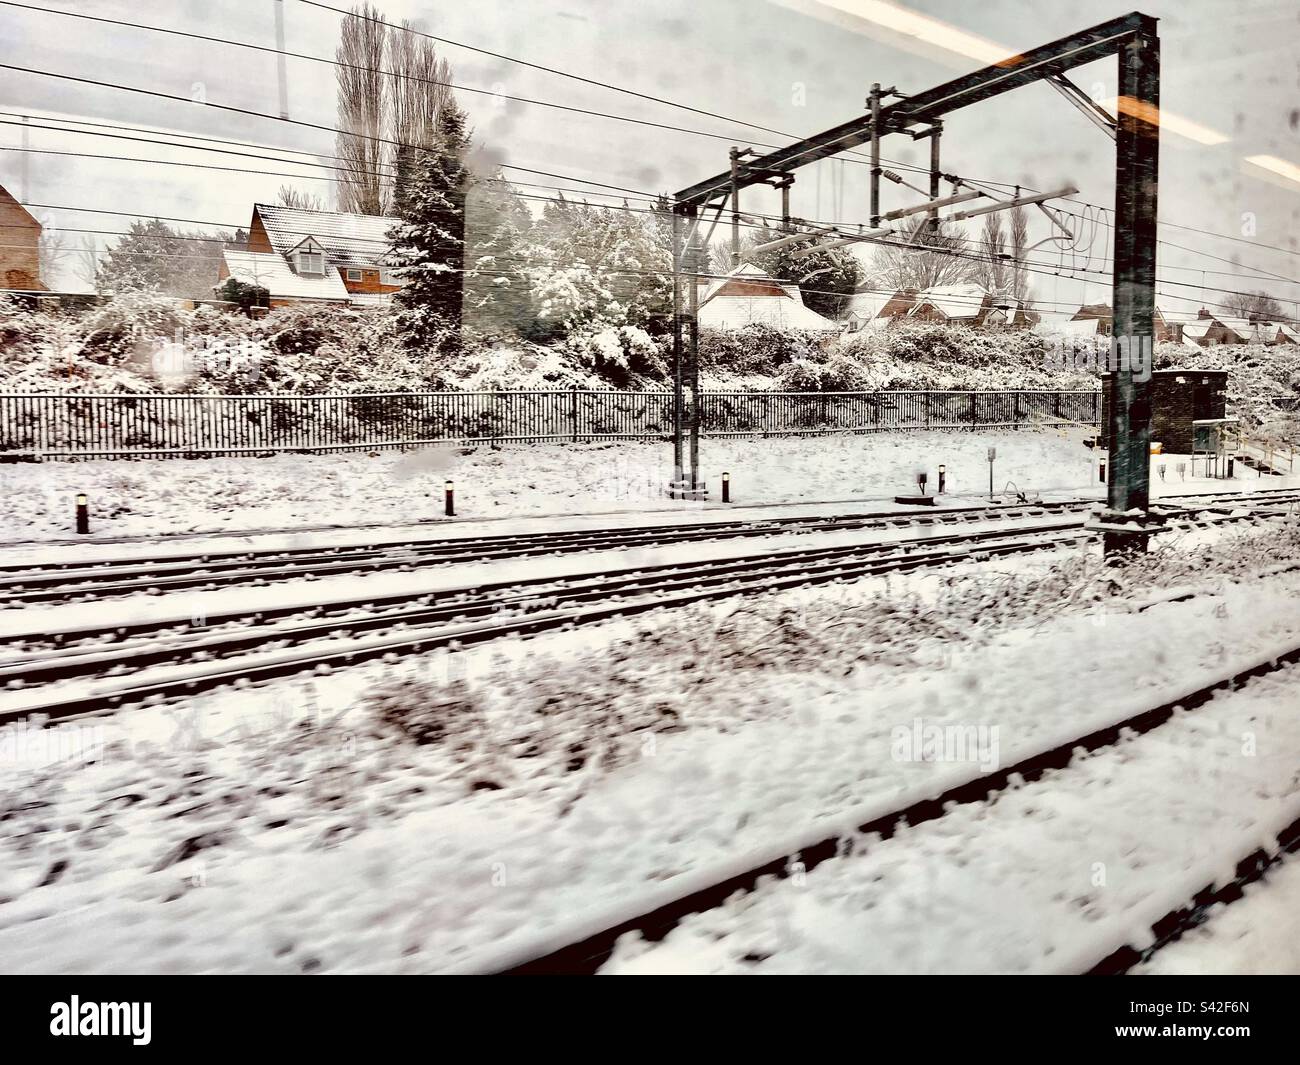 Railway in snow Stock Photo